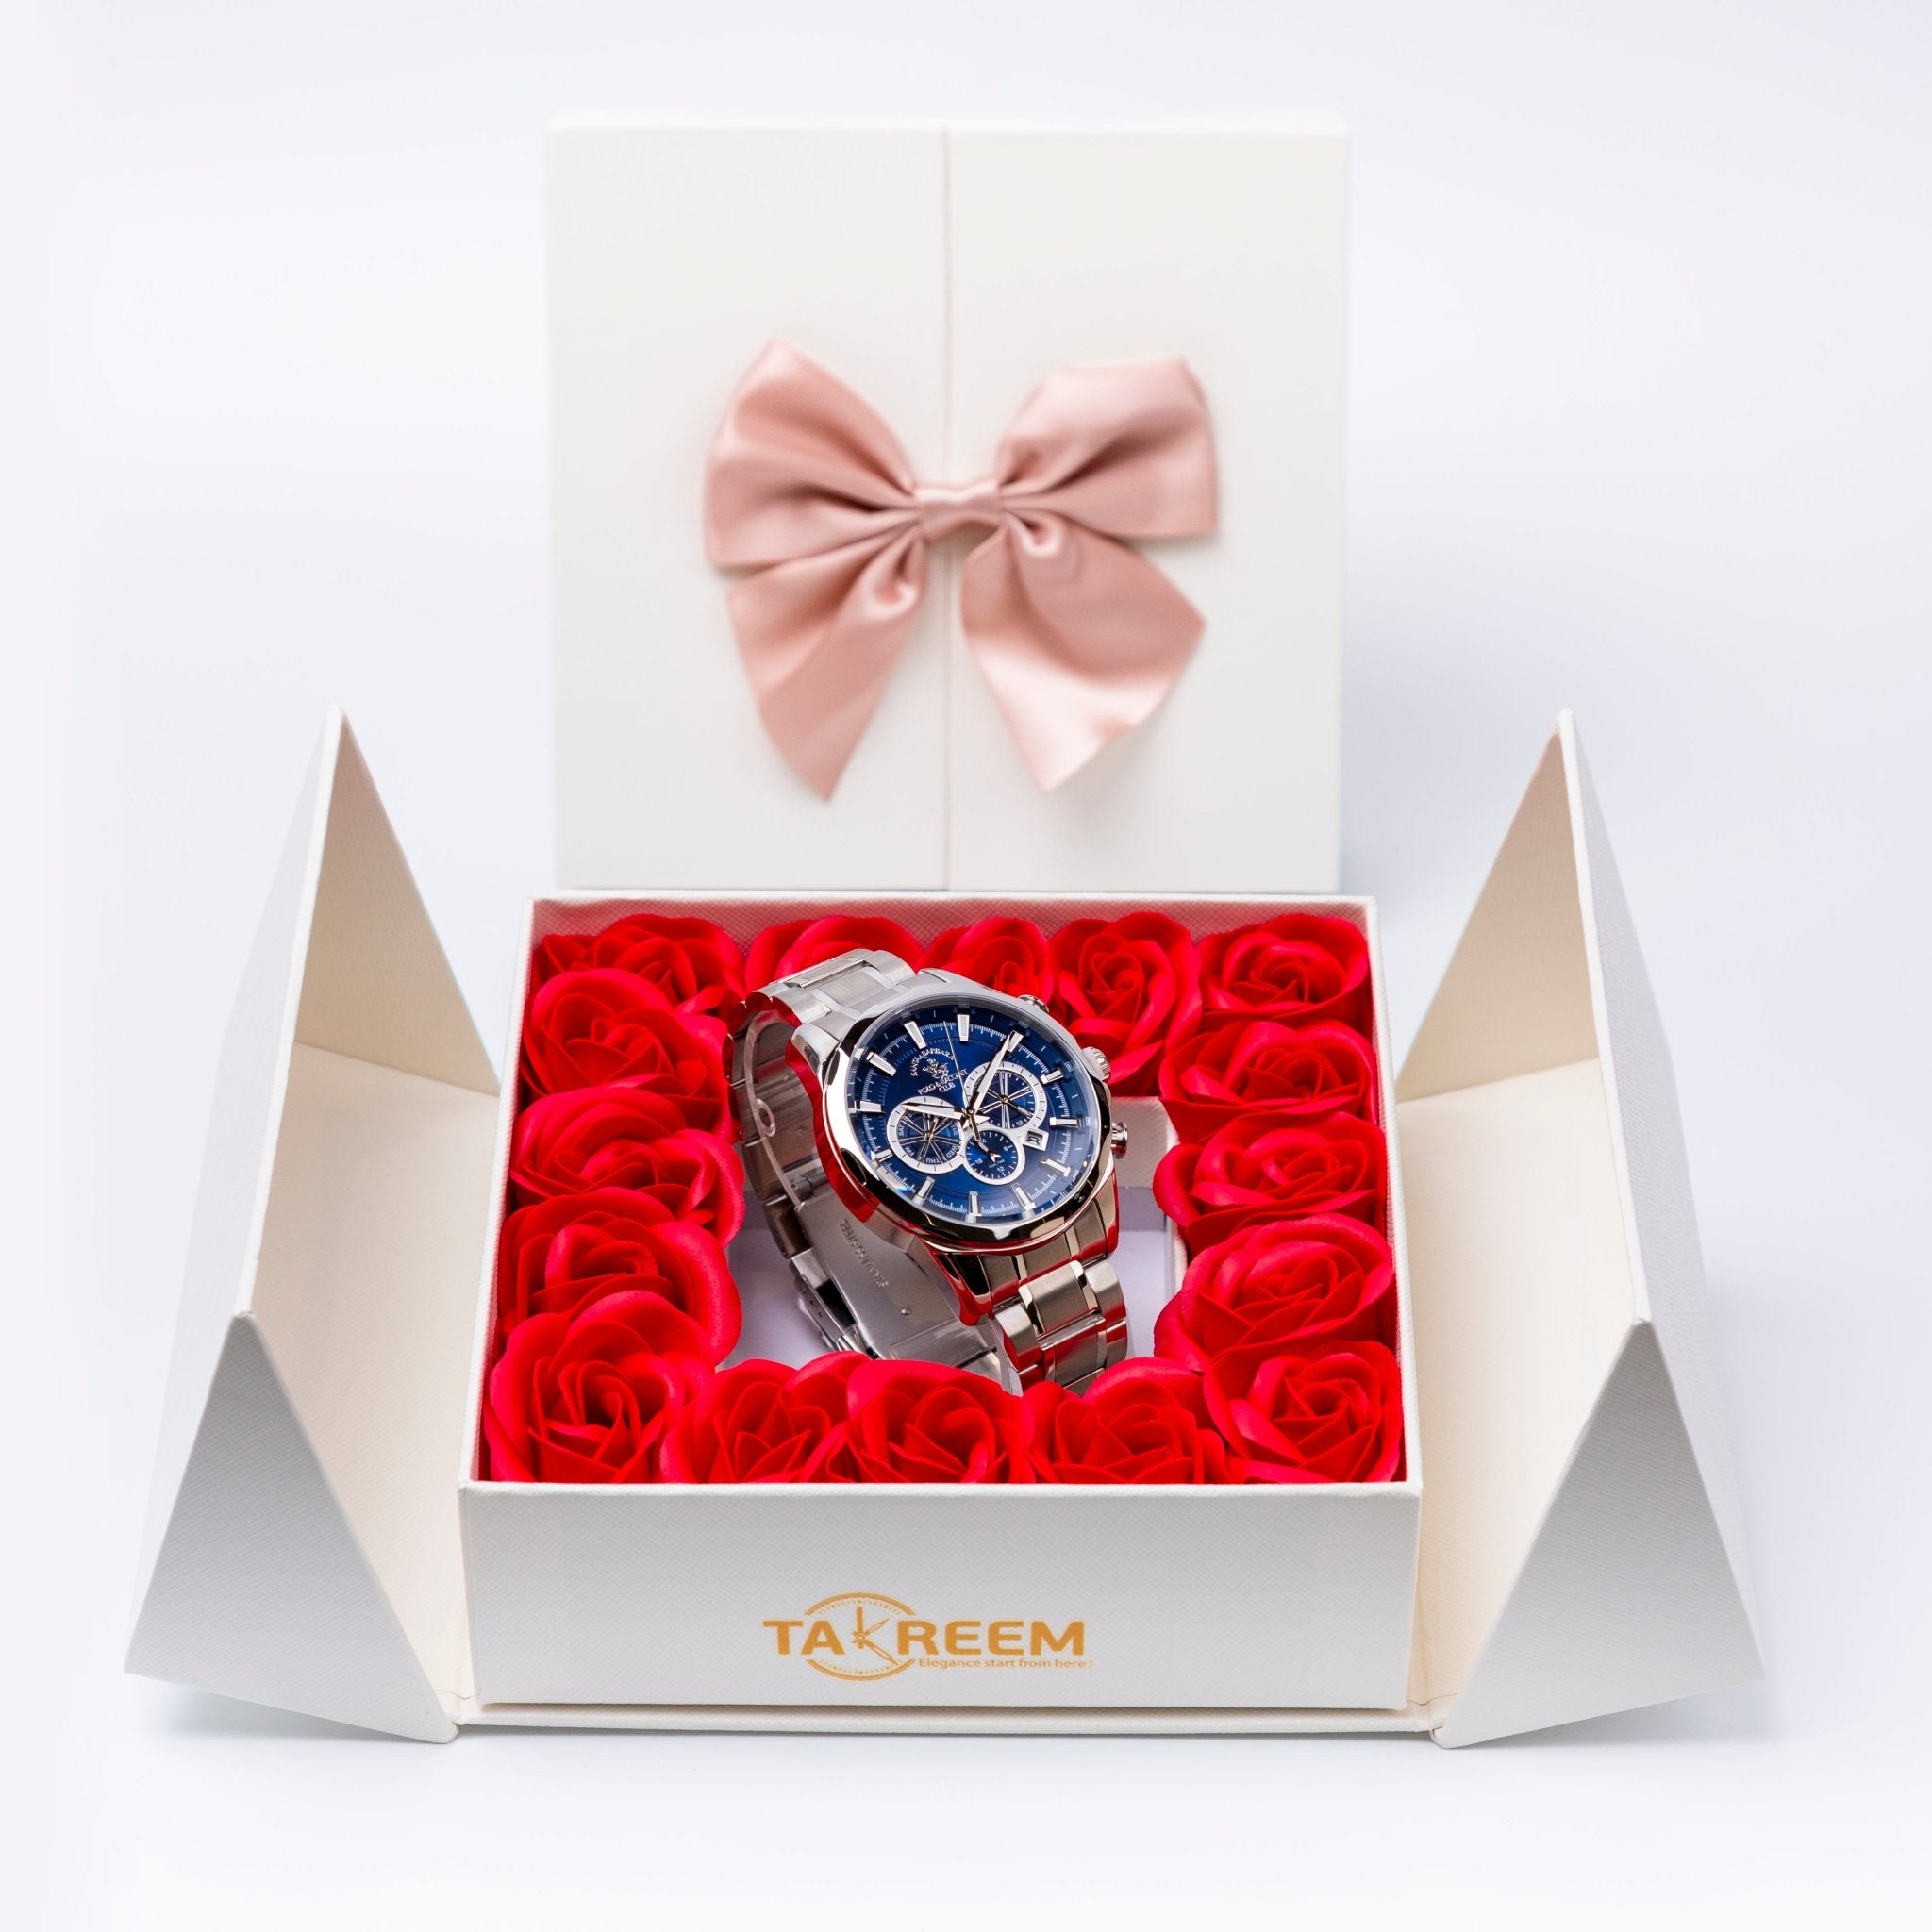 Flower Box - Gift For Men 25 - #shoFlower Box - Gift For Men 25p_name#Flower Box - Gift For Men 25Gift Boxes & TinsTakreemTakreem.joMenWatchFlower Box - Gift For Men 25 - Takreem.jo